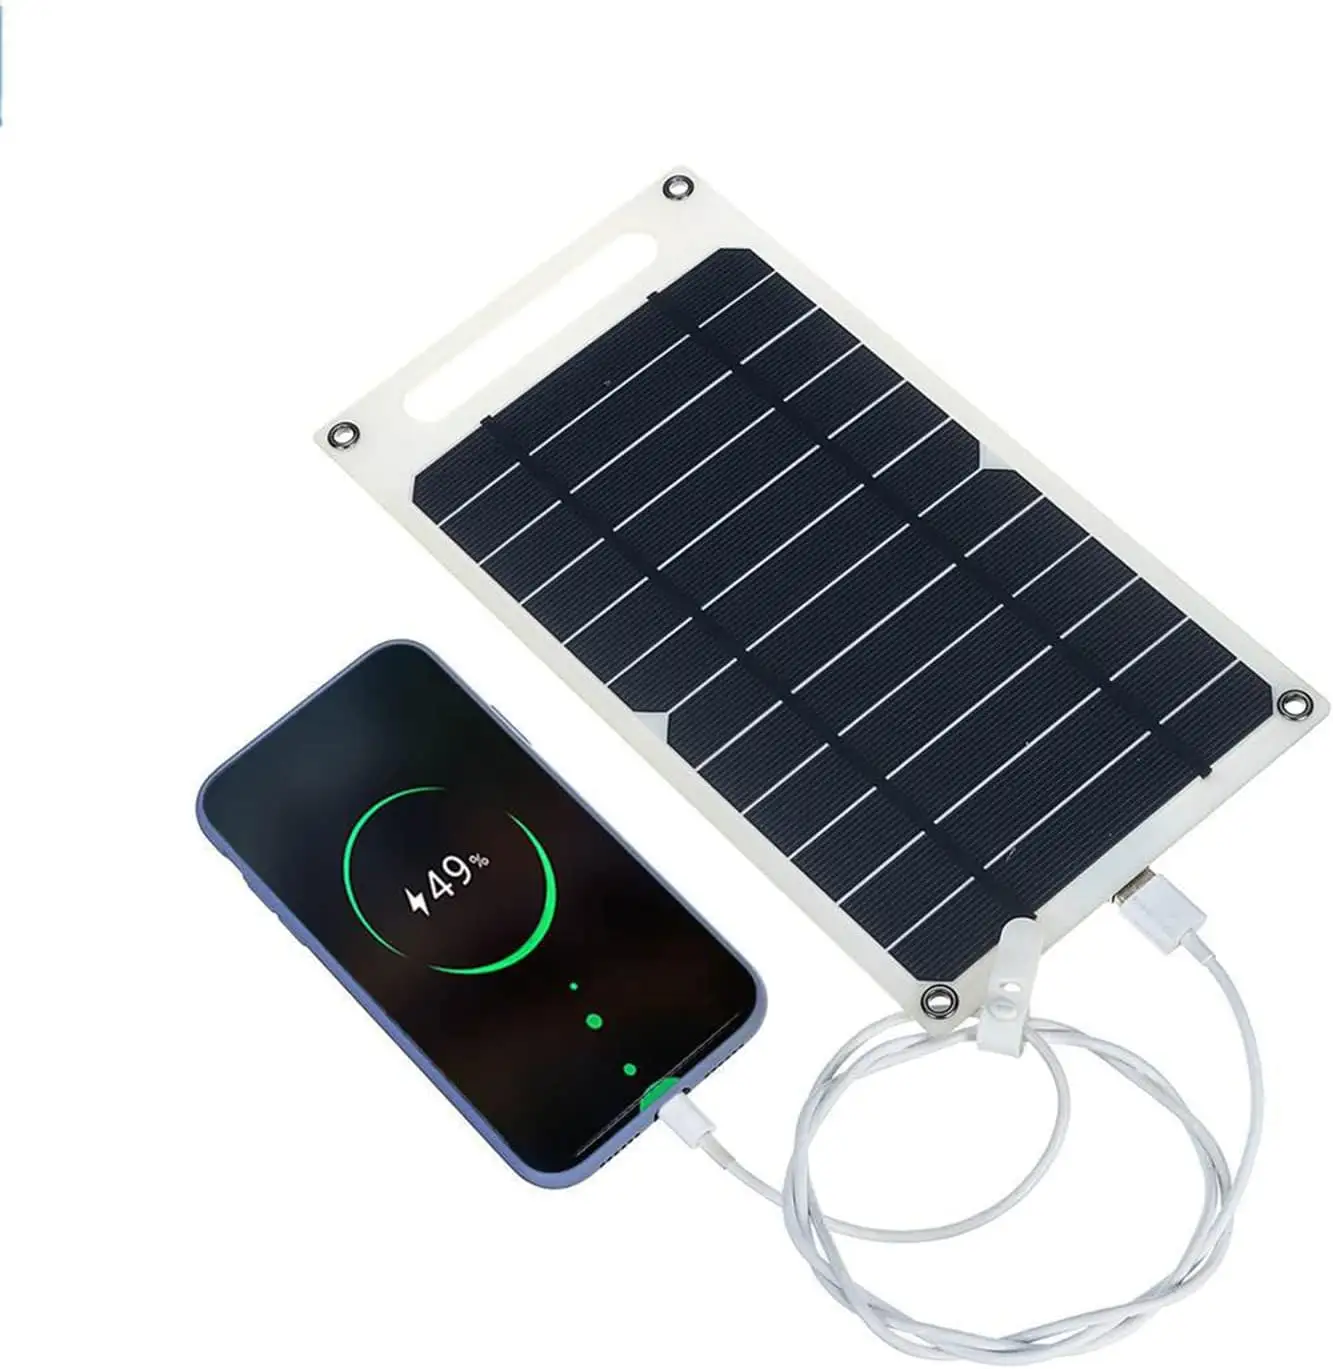 6W Flexible puissance panneau de charge Interface USB téléphones mobiles batterie randonnée en plein air pêche Camping Portable panneau solaire chargeur